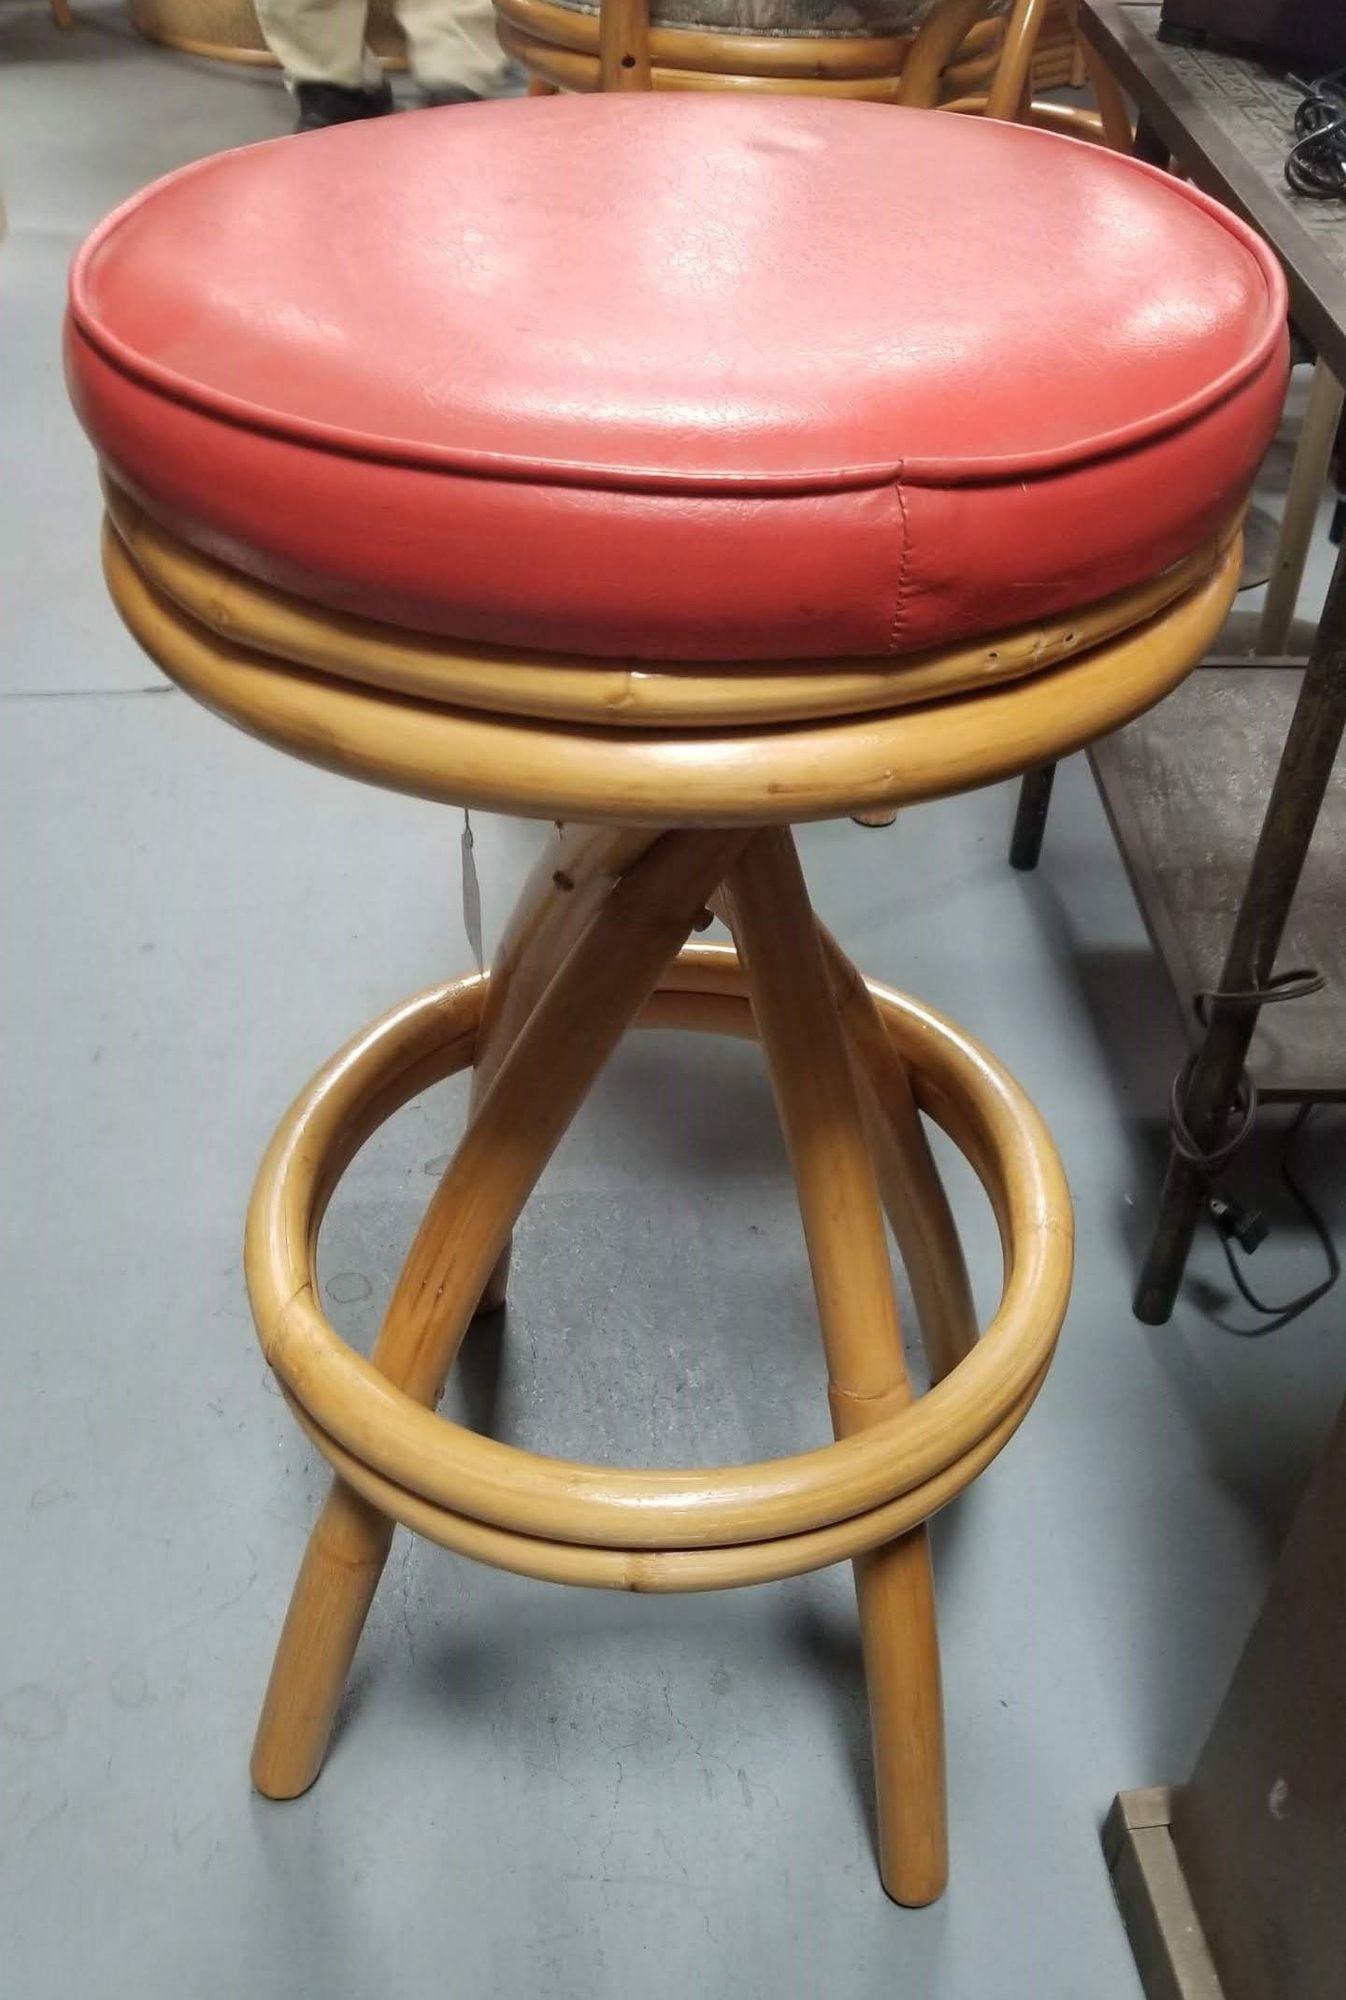 Tabourets de bar restaurés à pied unique en spirale avec un double repose-pieds empilé et des sièges rouges pivotants.

Hauteur de l'assise : 30